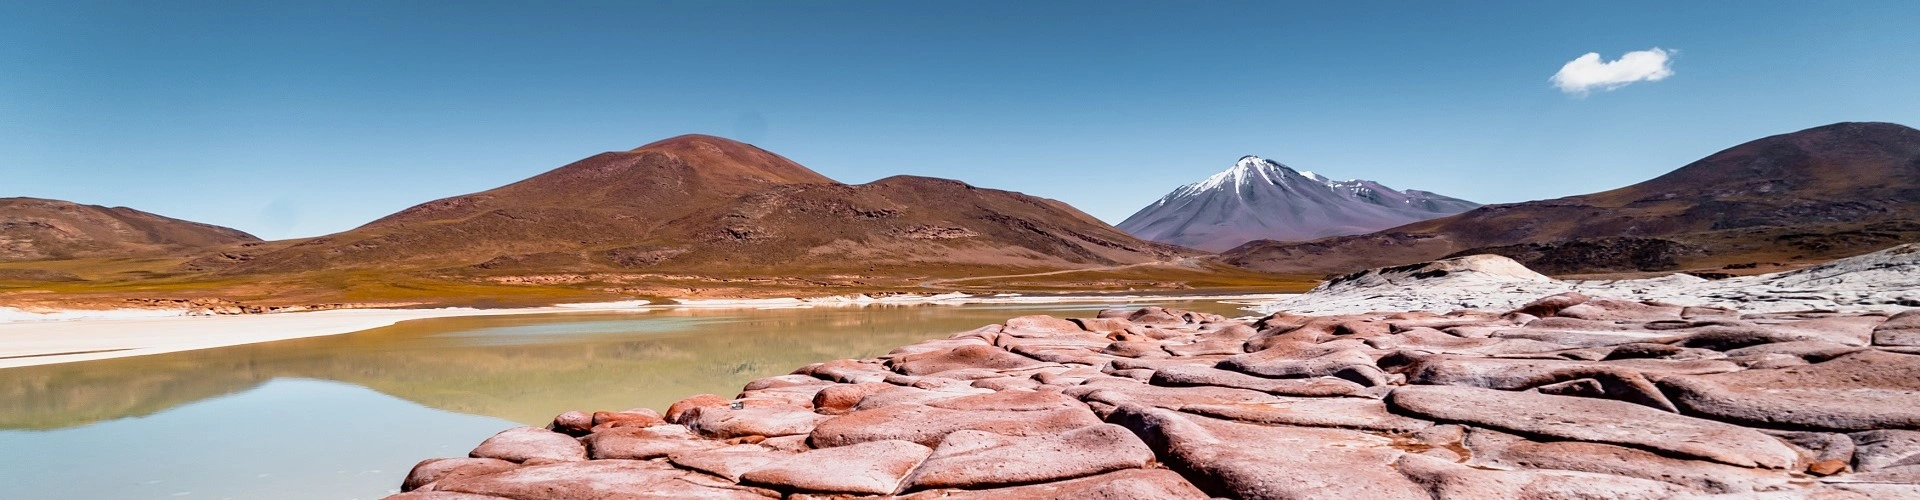 Cenário de muitas rochas, com montanhas e vulcão em segundo plano. No primeiro, ao lado do solo pedregoso e de cor  avermelhada, um riacho raso.